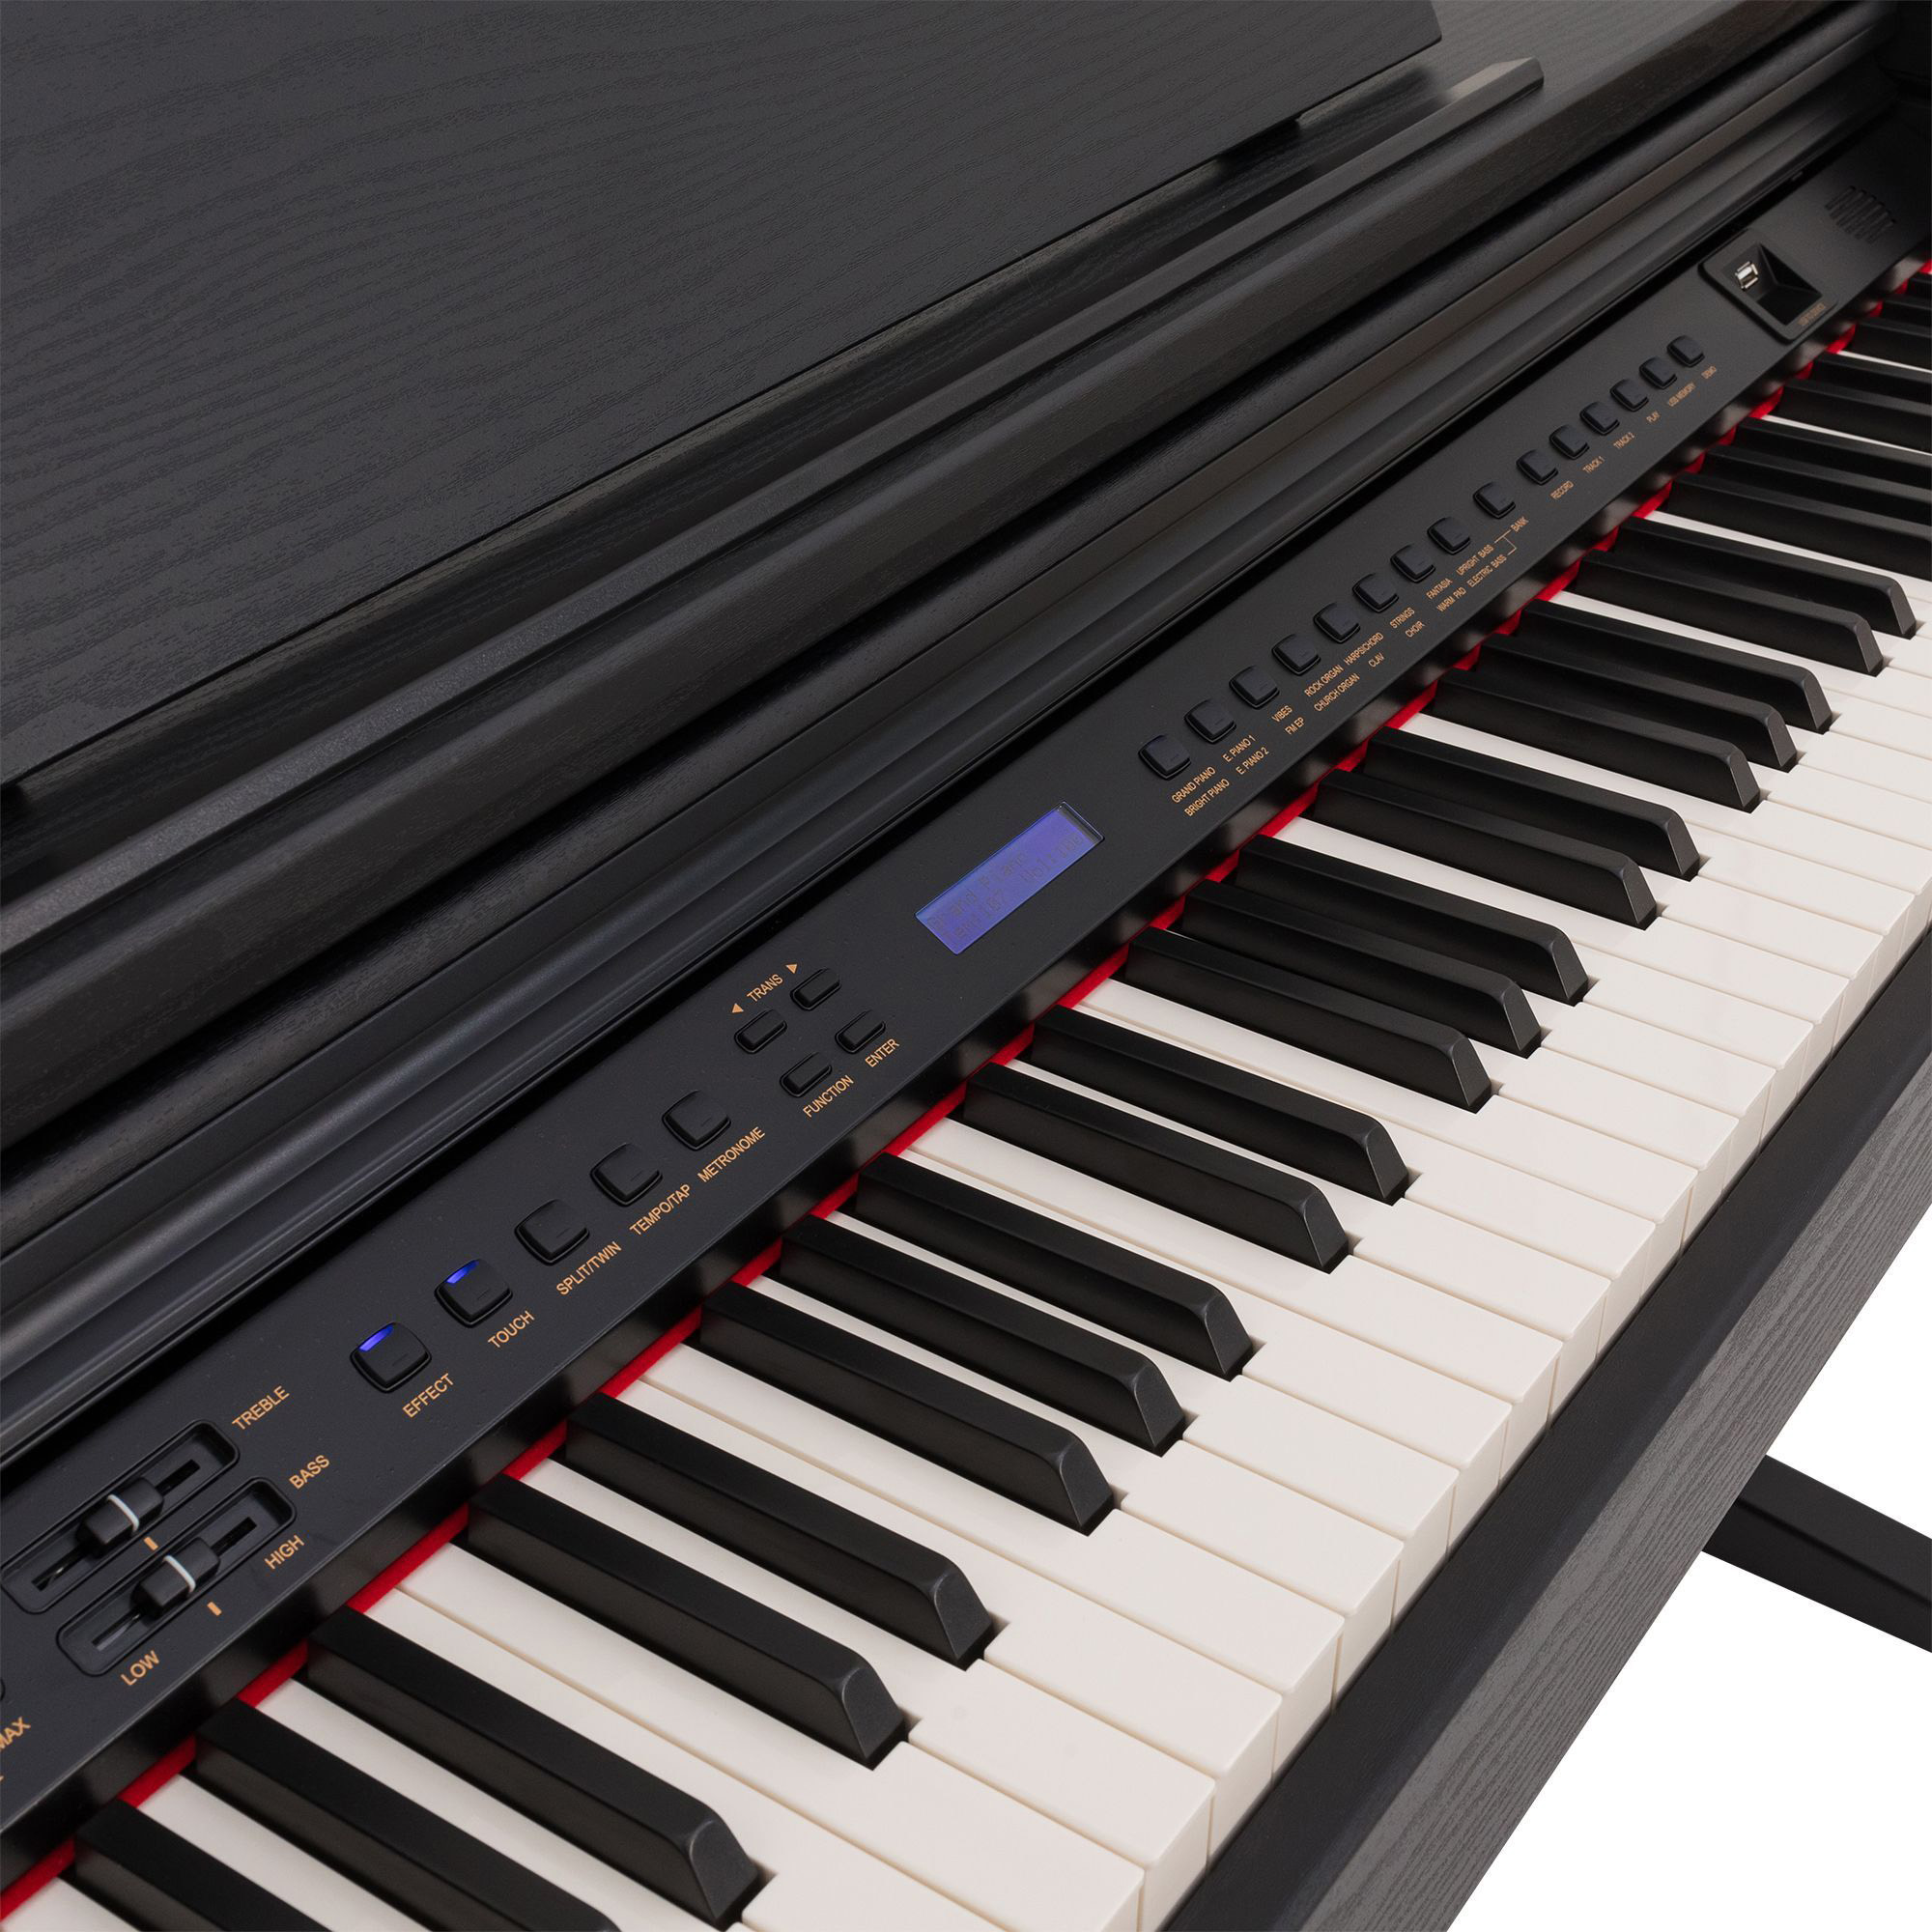 Rockdale Fantasia 128 Graded Black Цифровые пианино